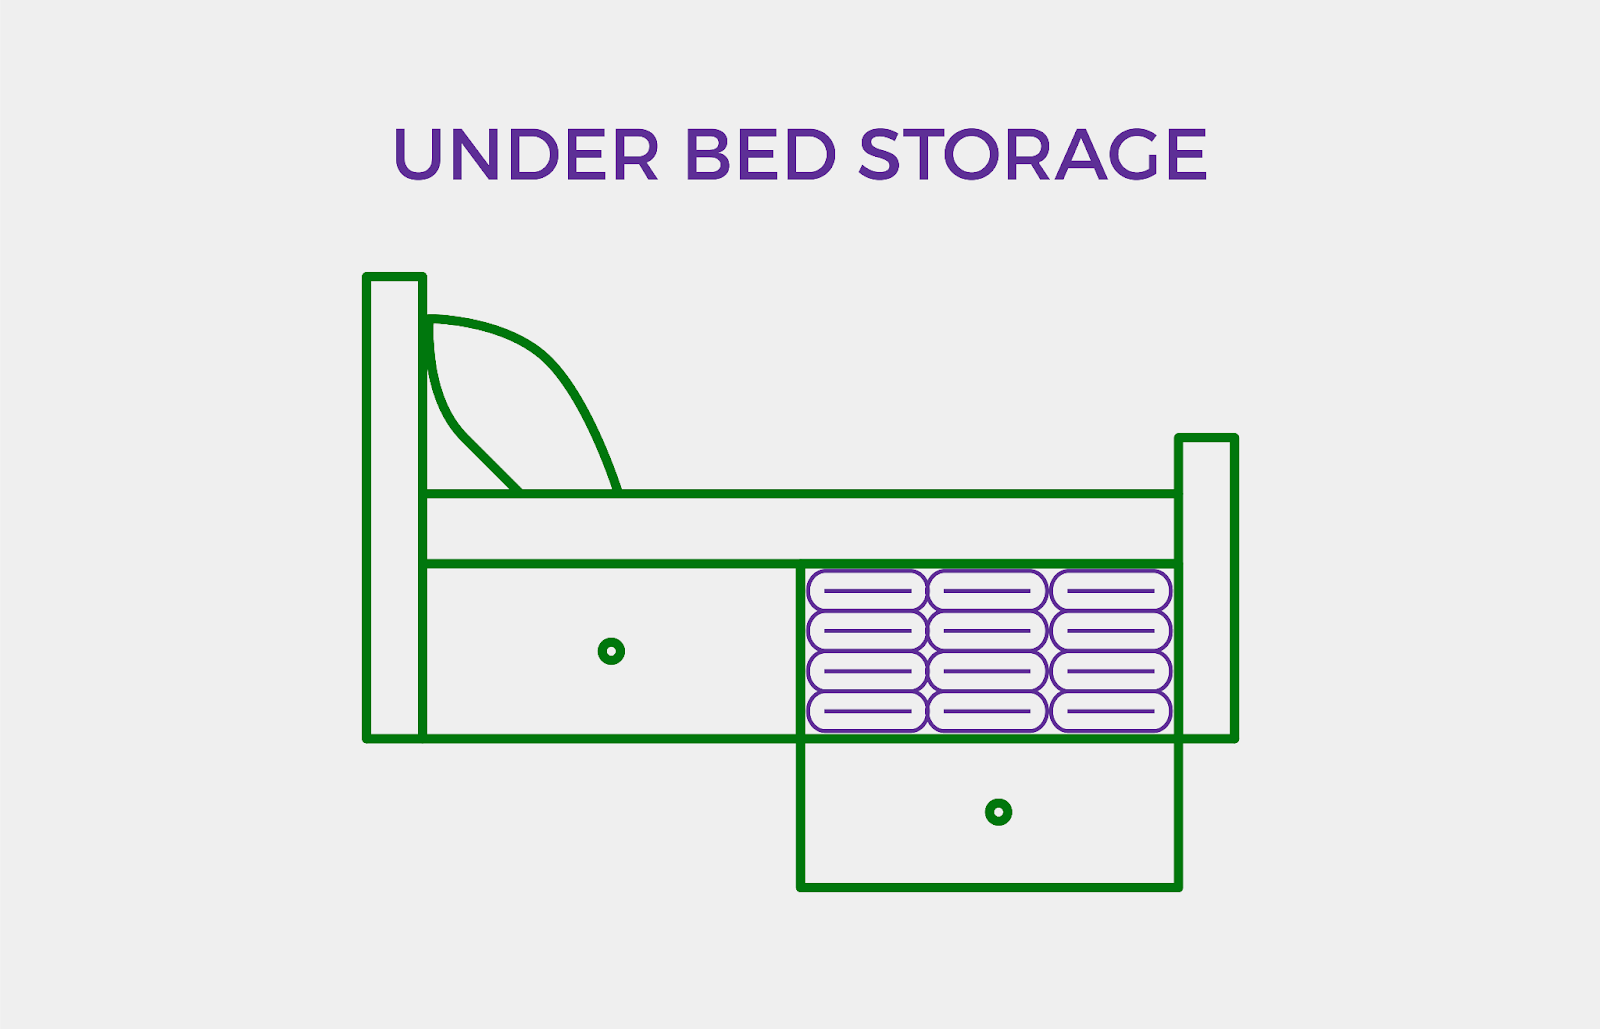 Under bed storage